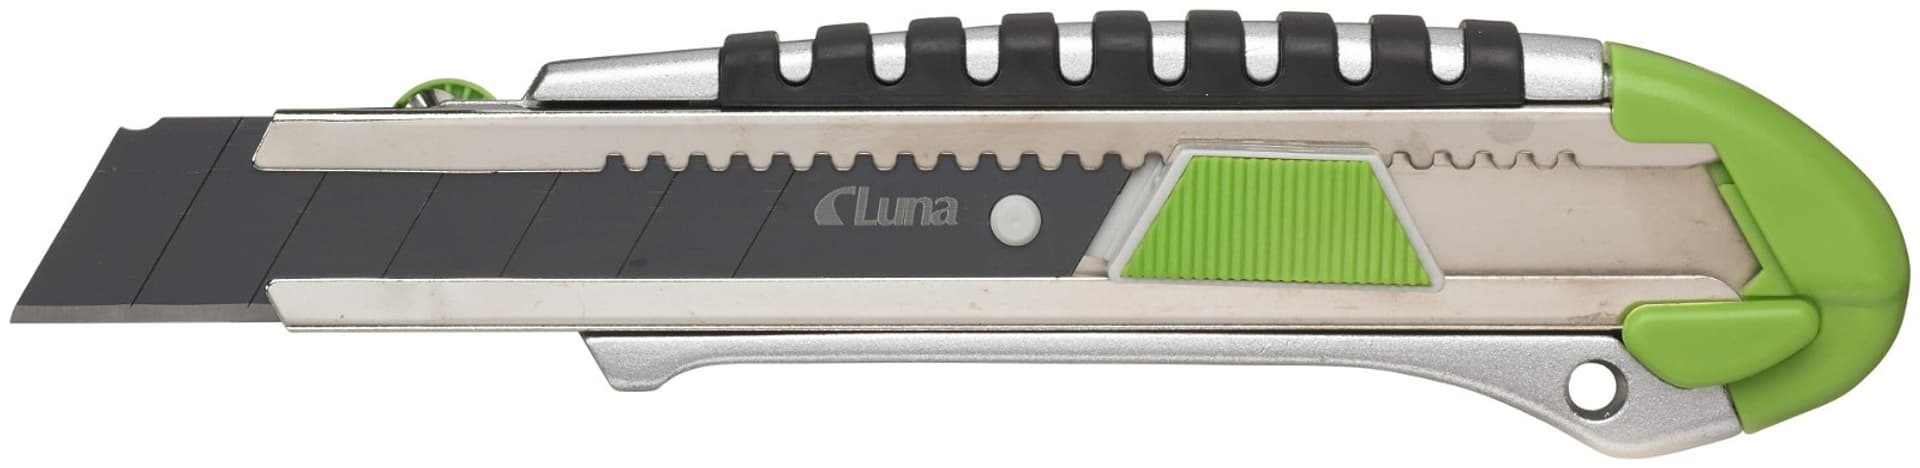 Nóż z aluminium z odłamywanym ostrzem L25 Luna